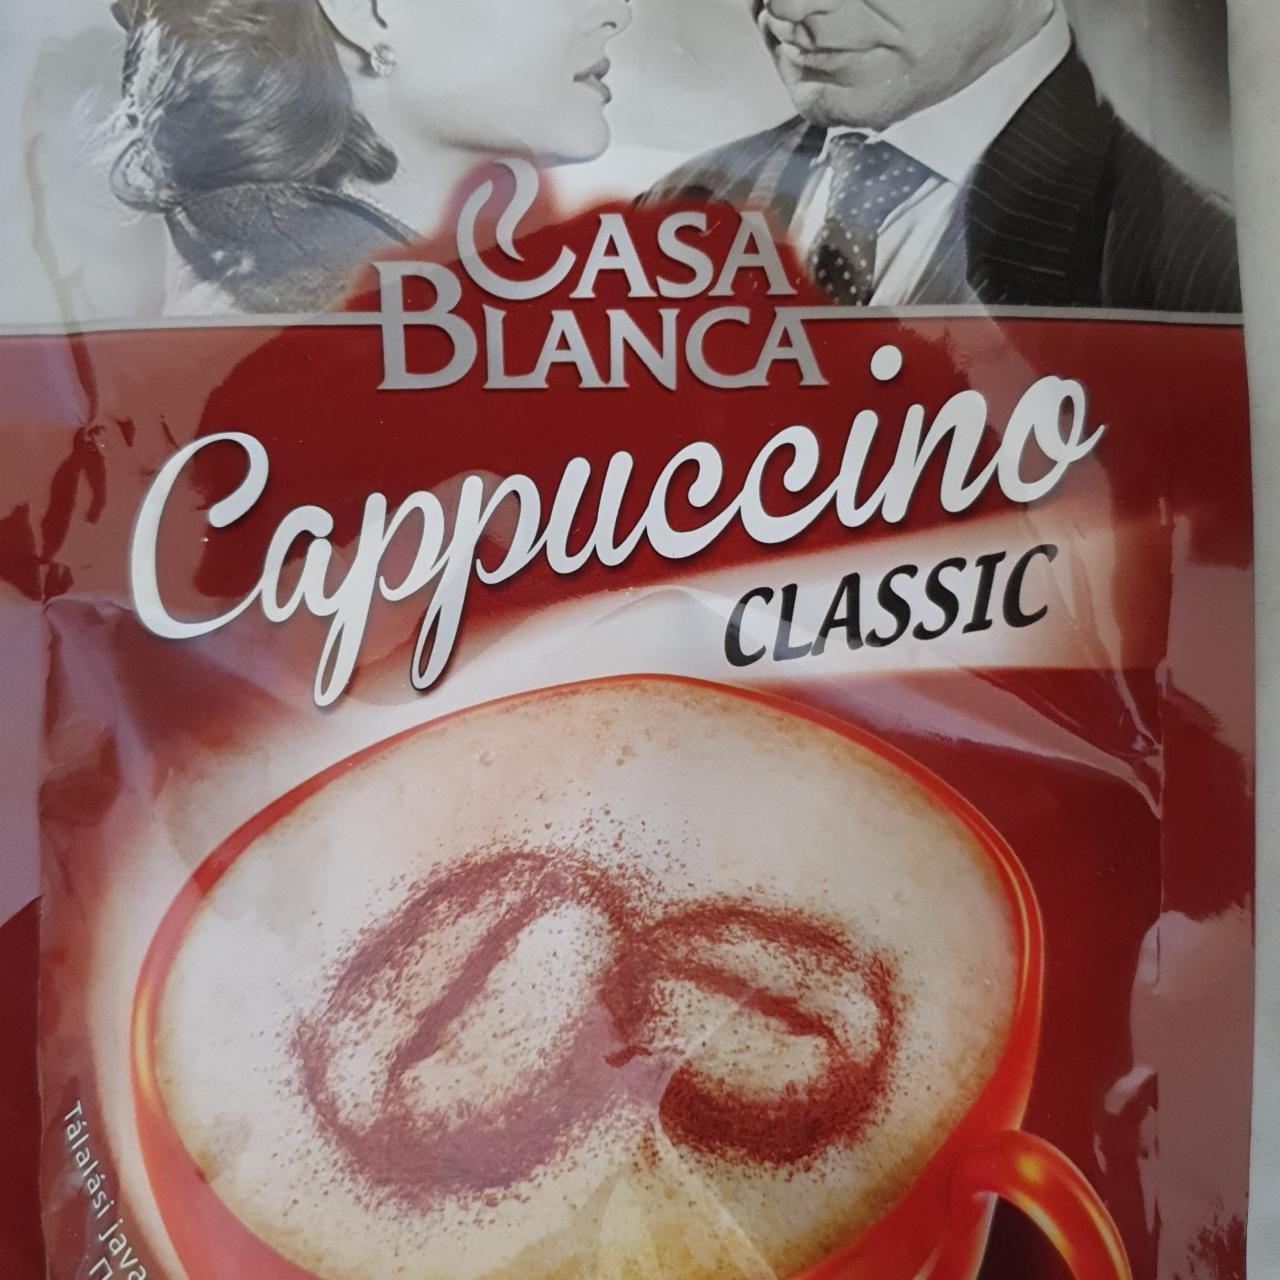 Képek - Cappuccino Classic Casa Blanca